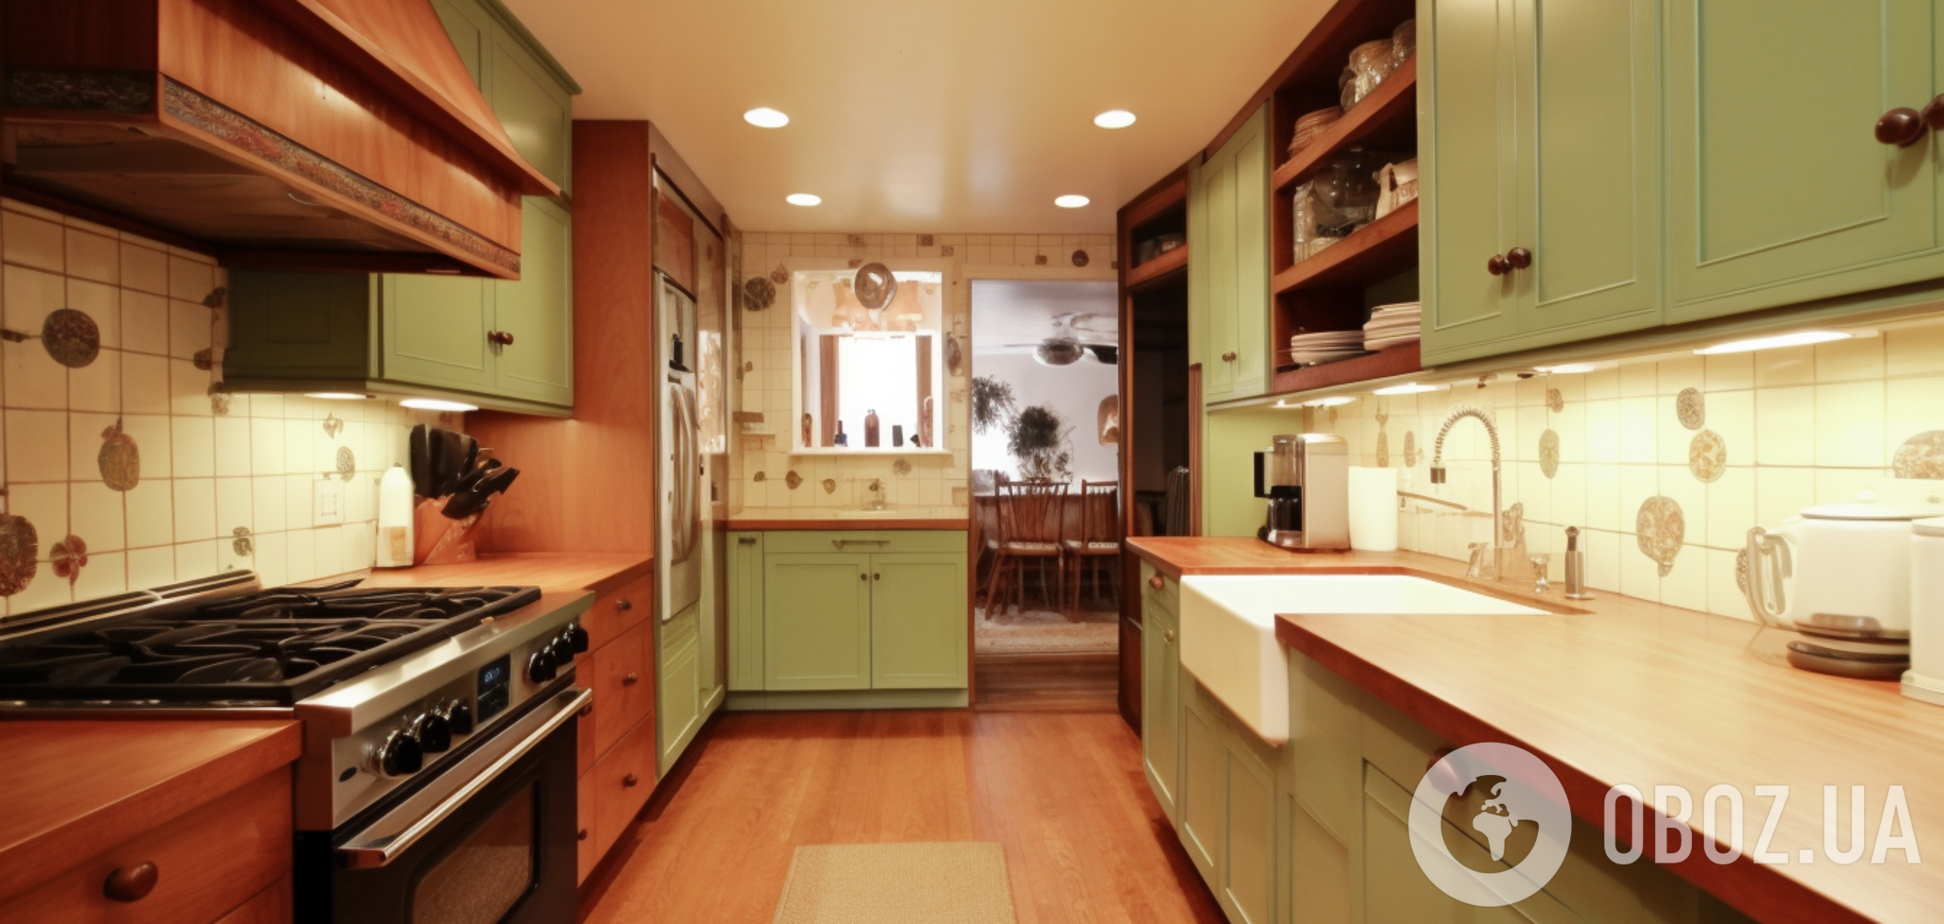 Як позбутися плям іржі на кухонних поверхнях: дієві способи